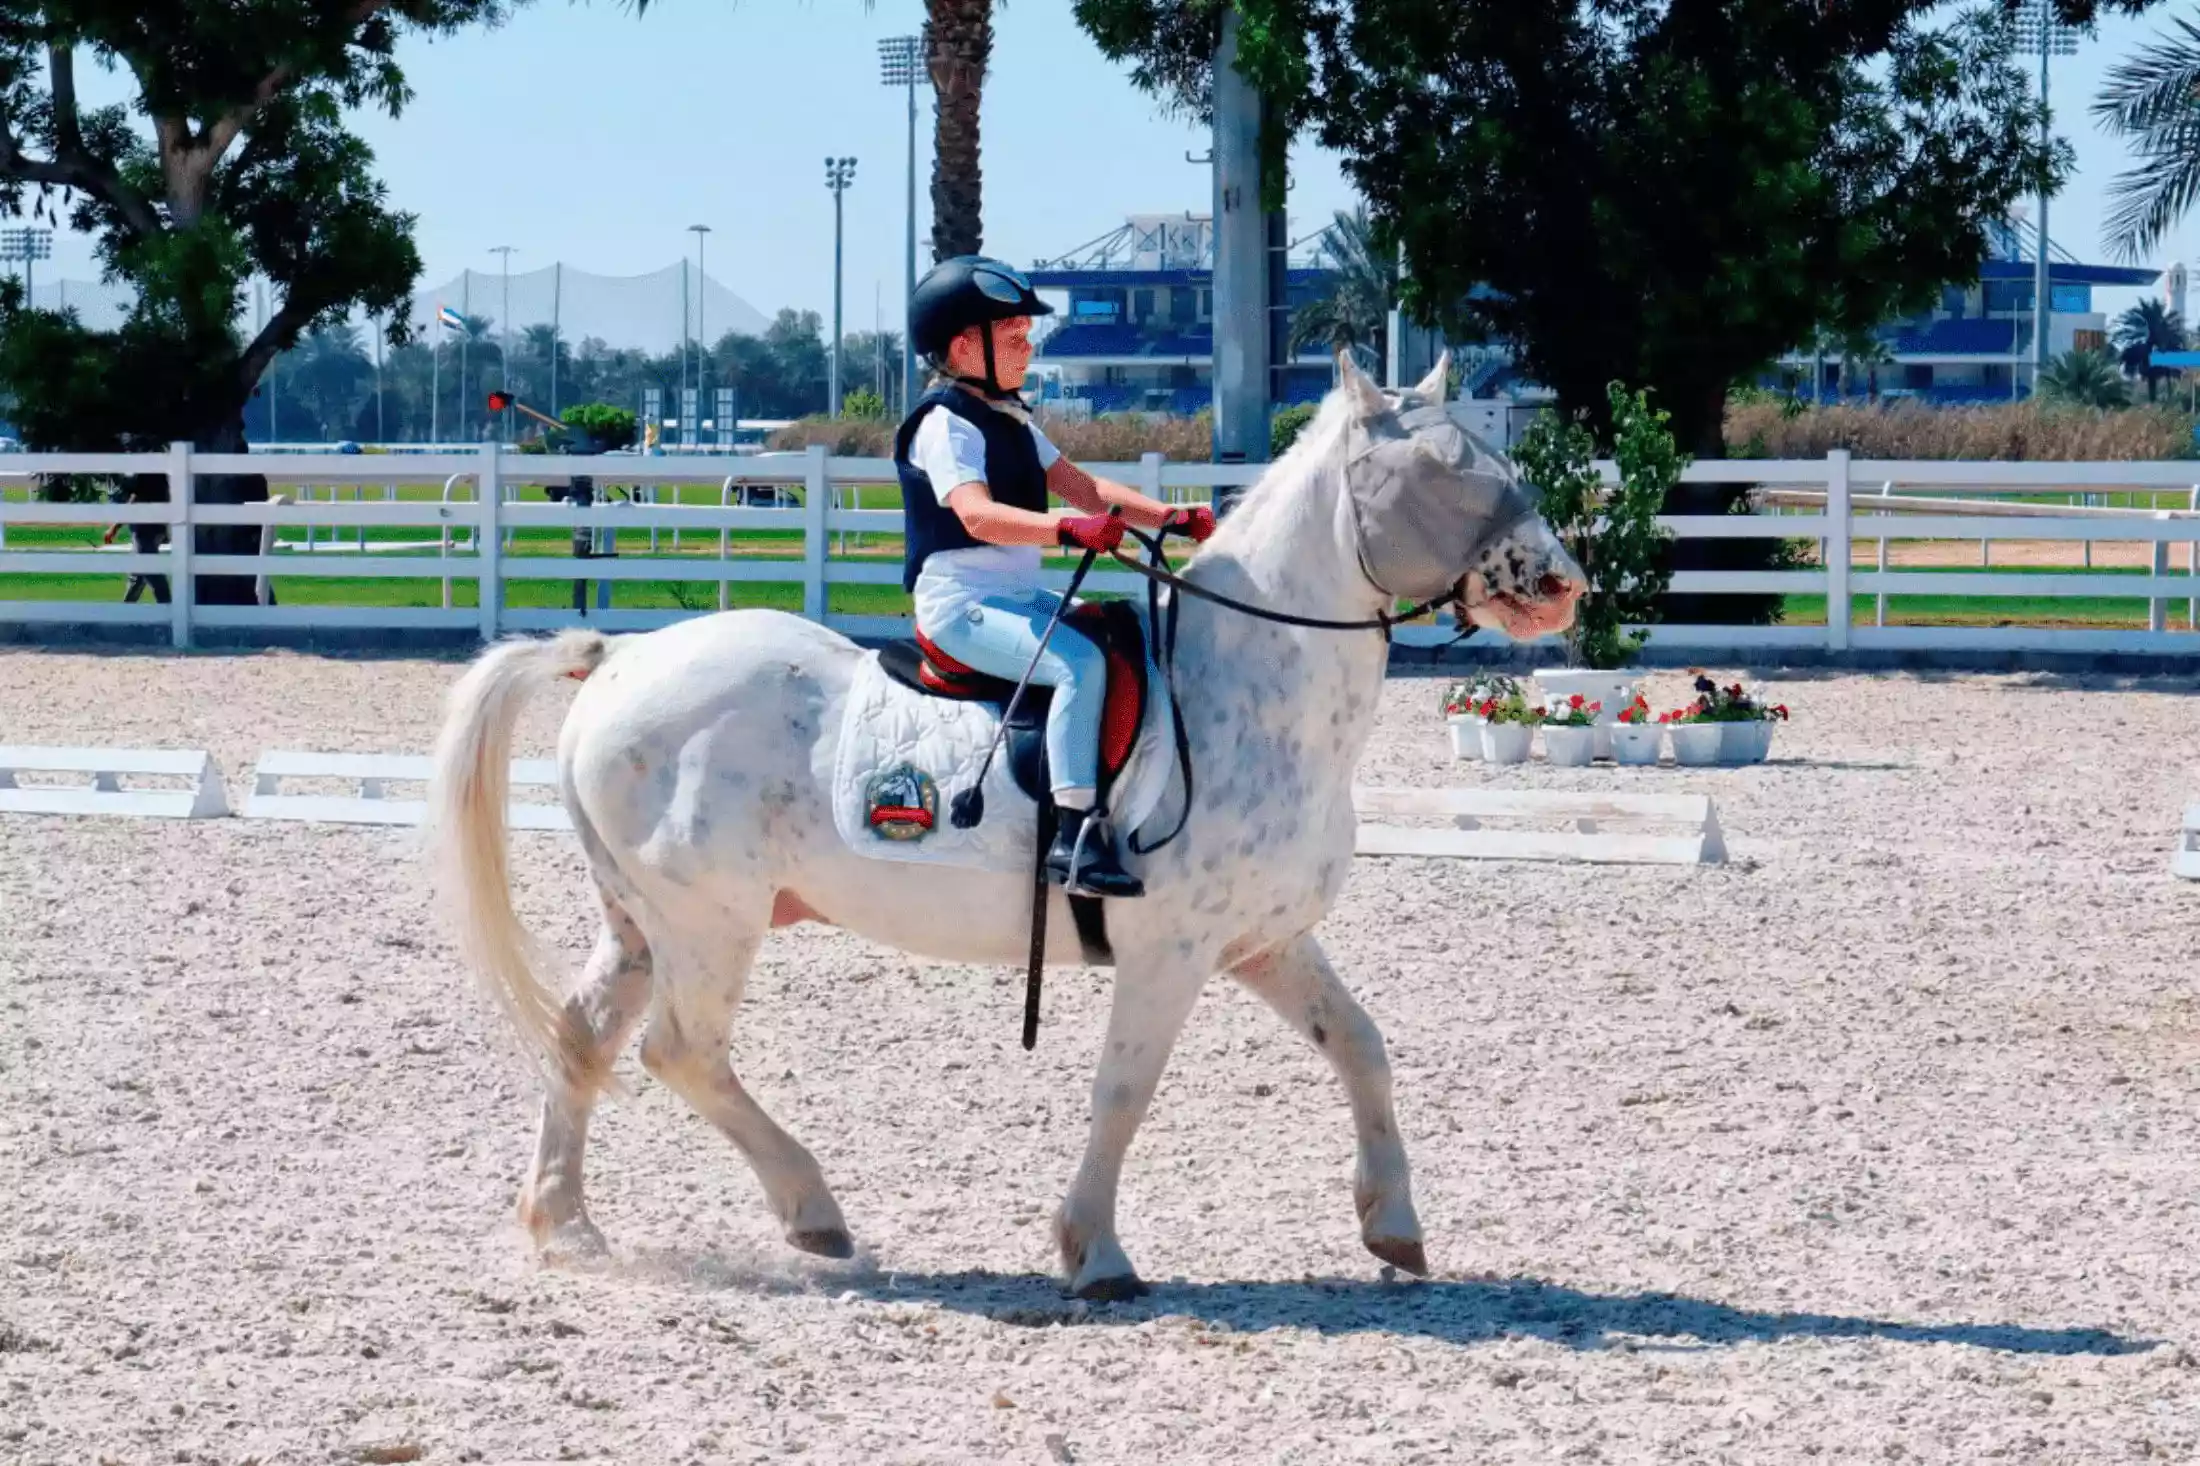 Horse Riding School, source: Abu Dhabi Equastrian Club